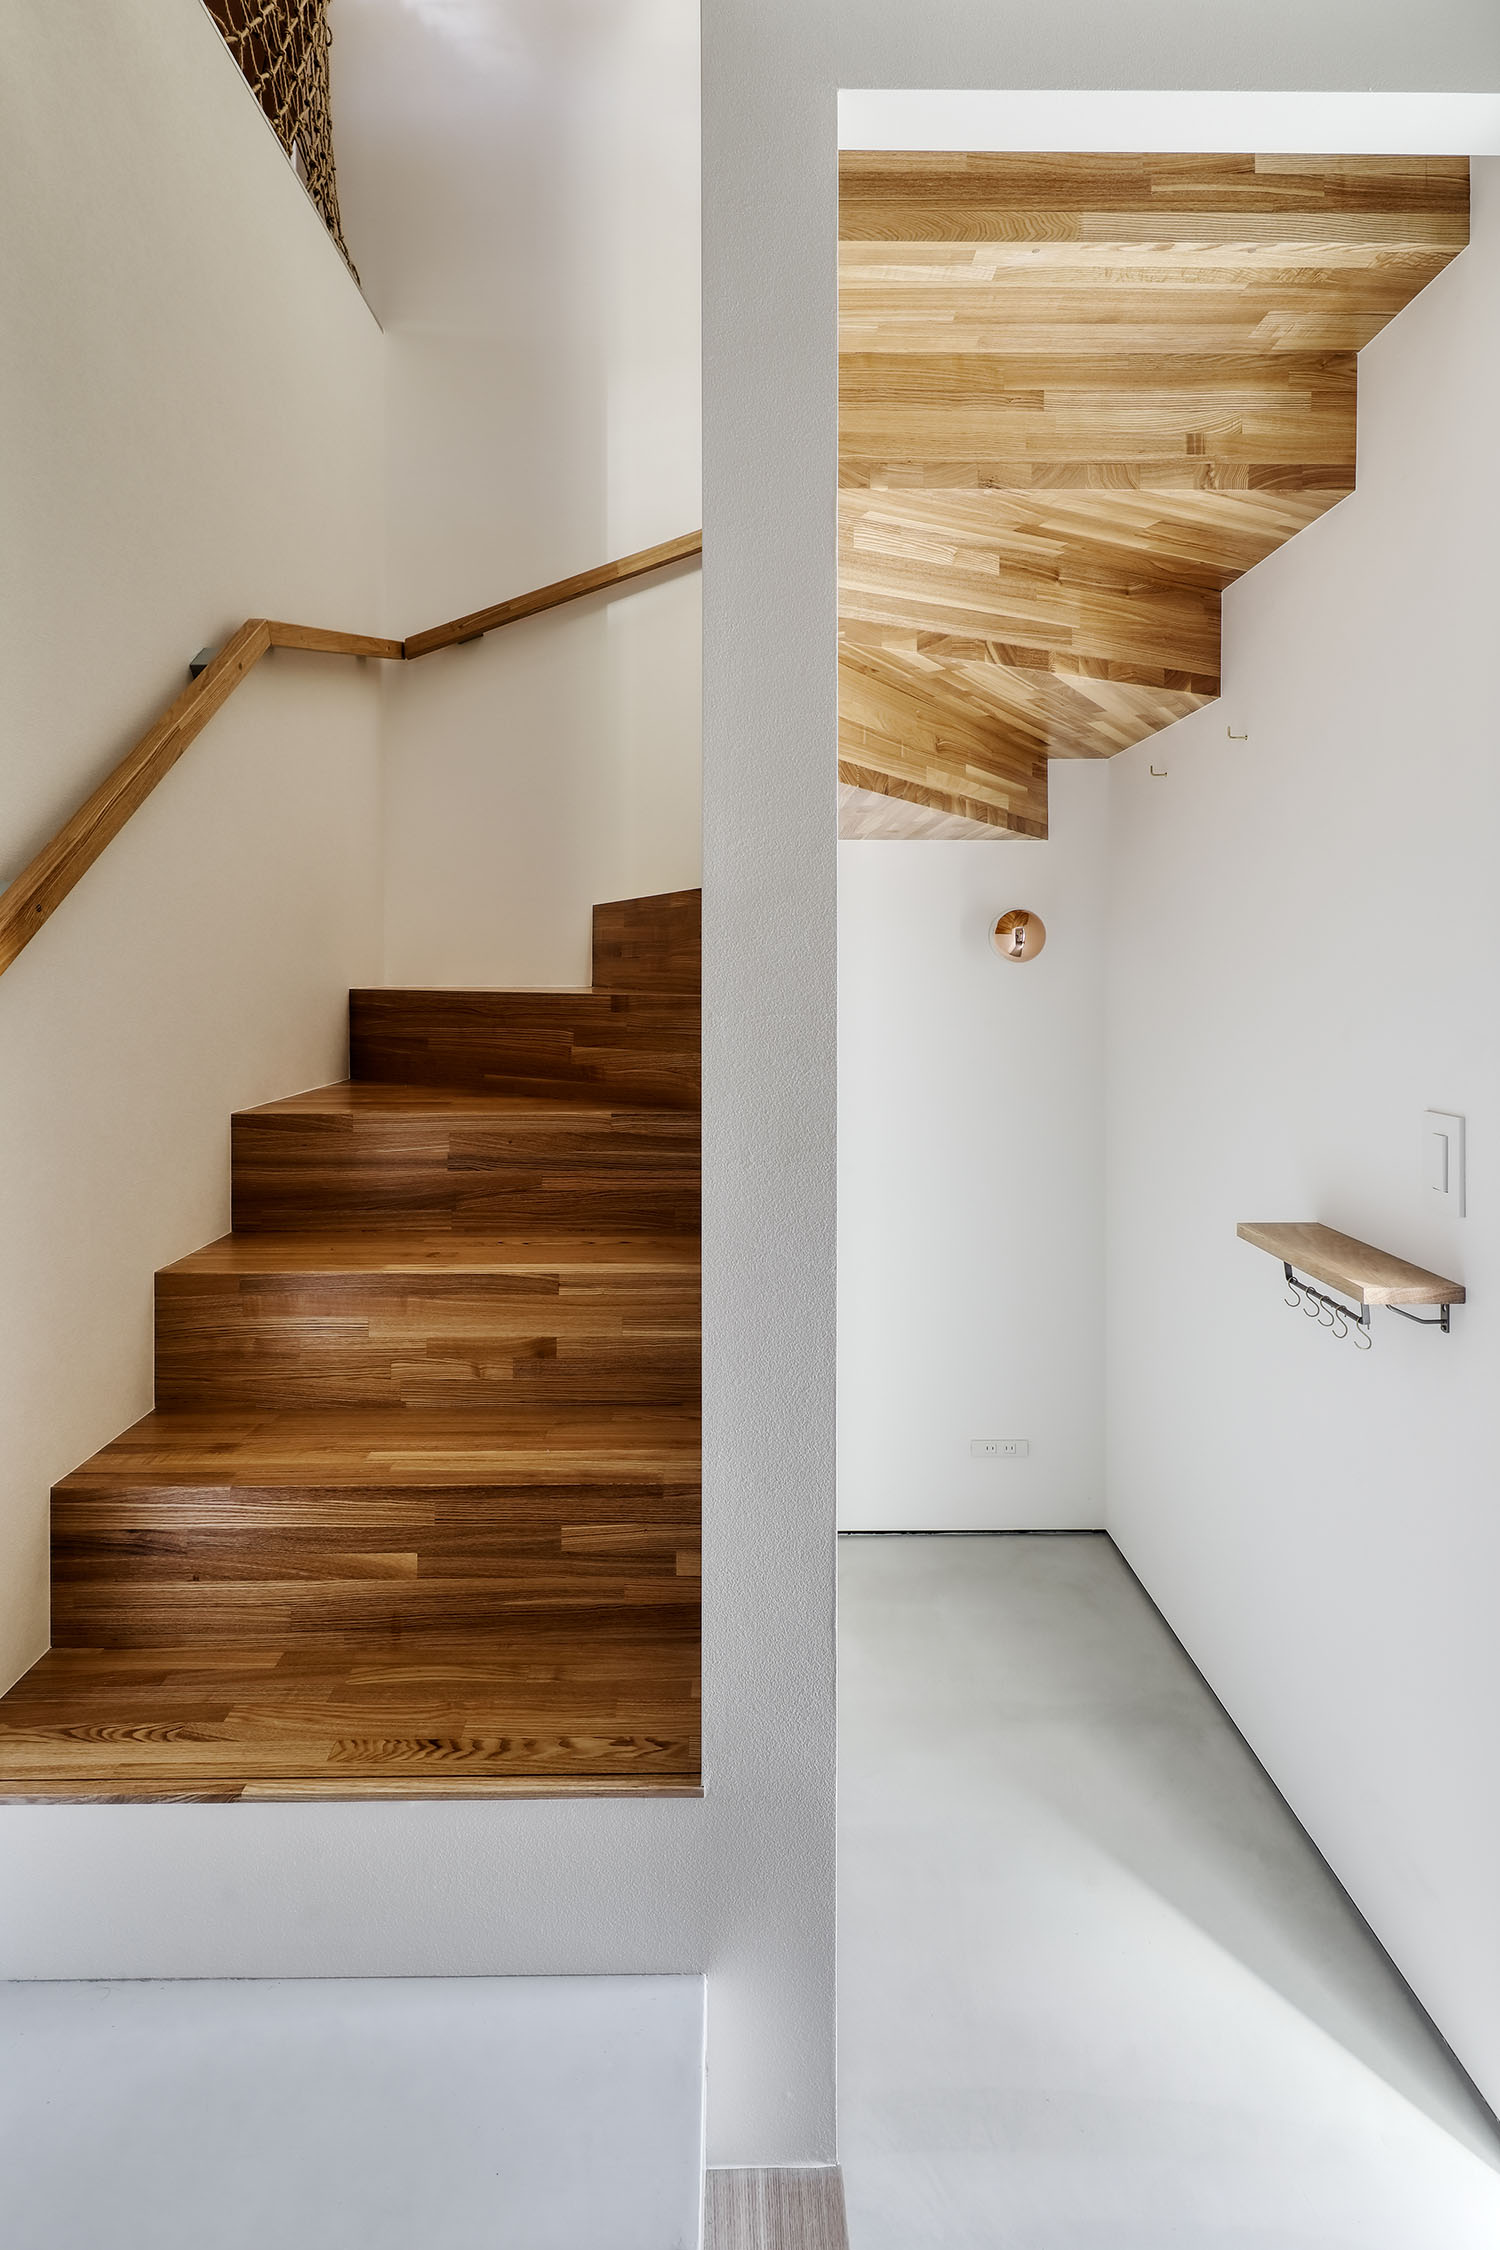 注文住宅・階段・木製・螺旋階段・木の階段・ナチュラル